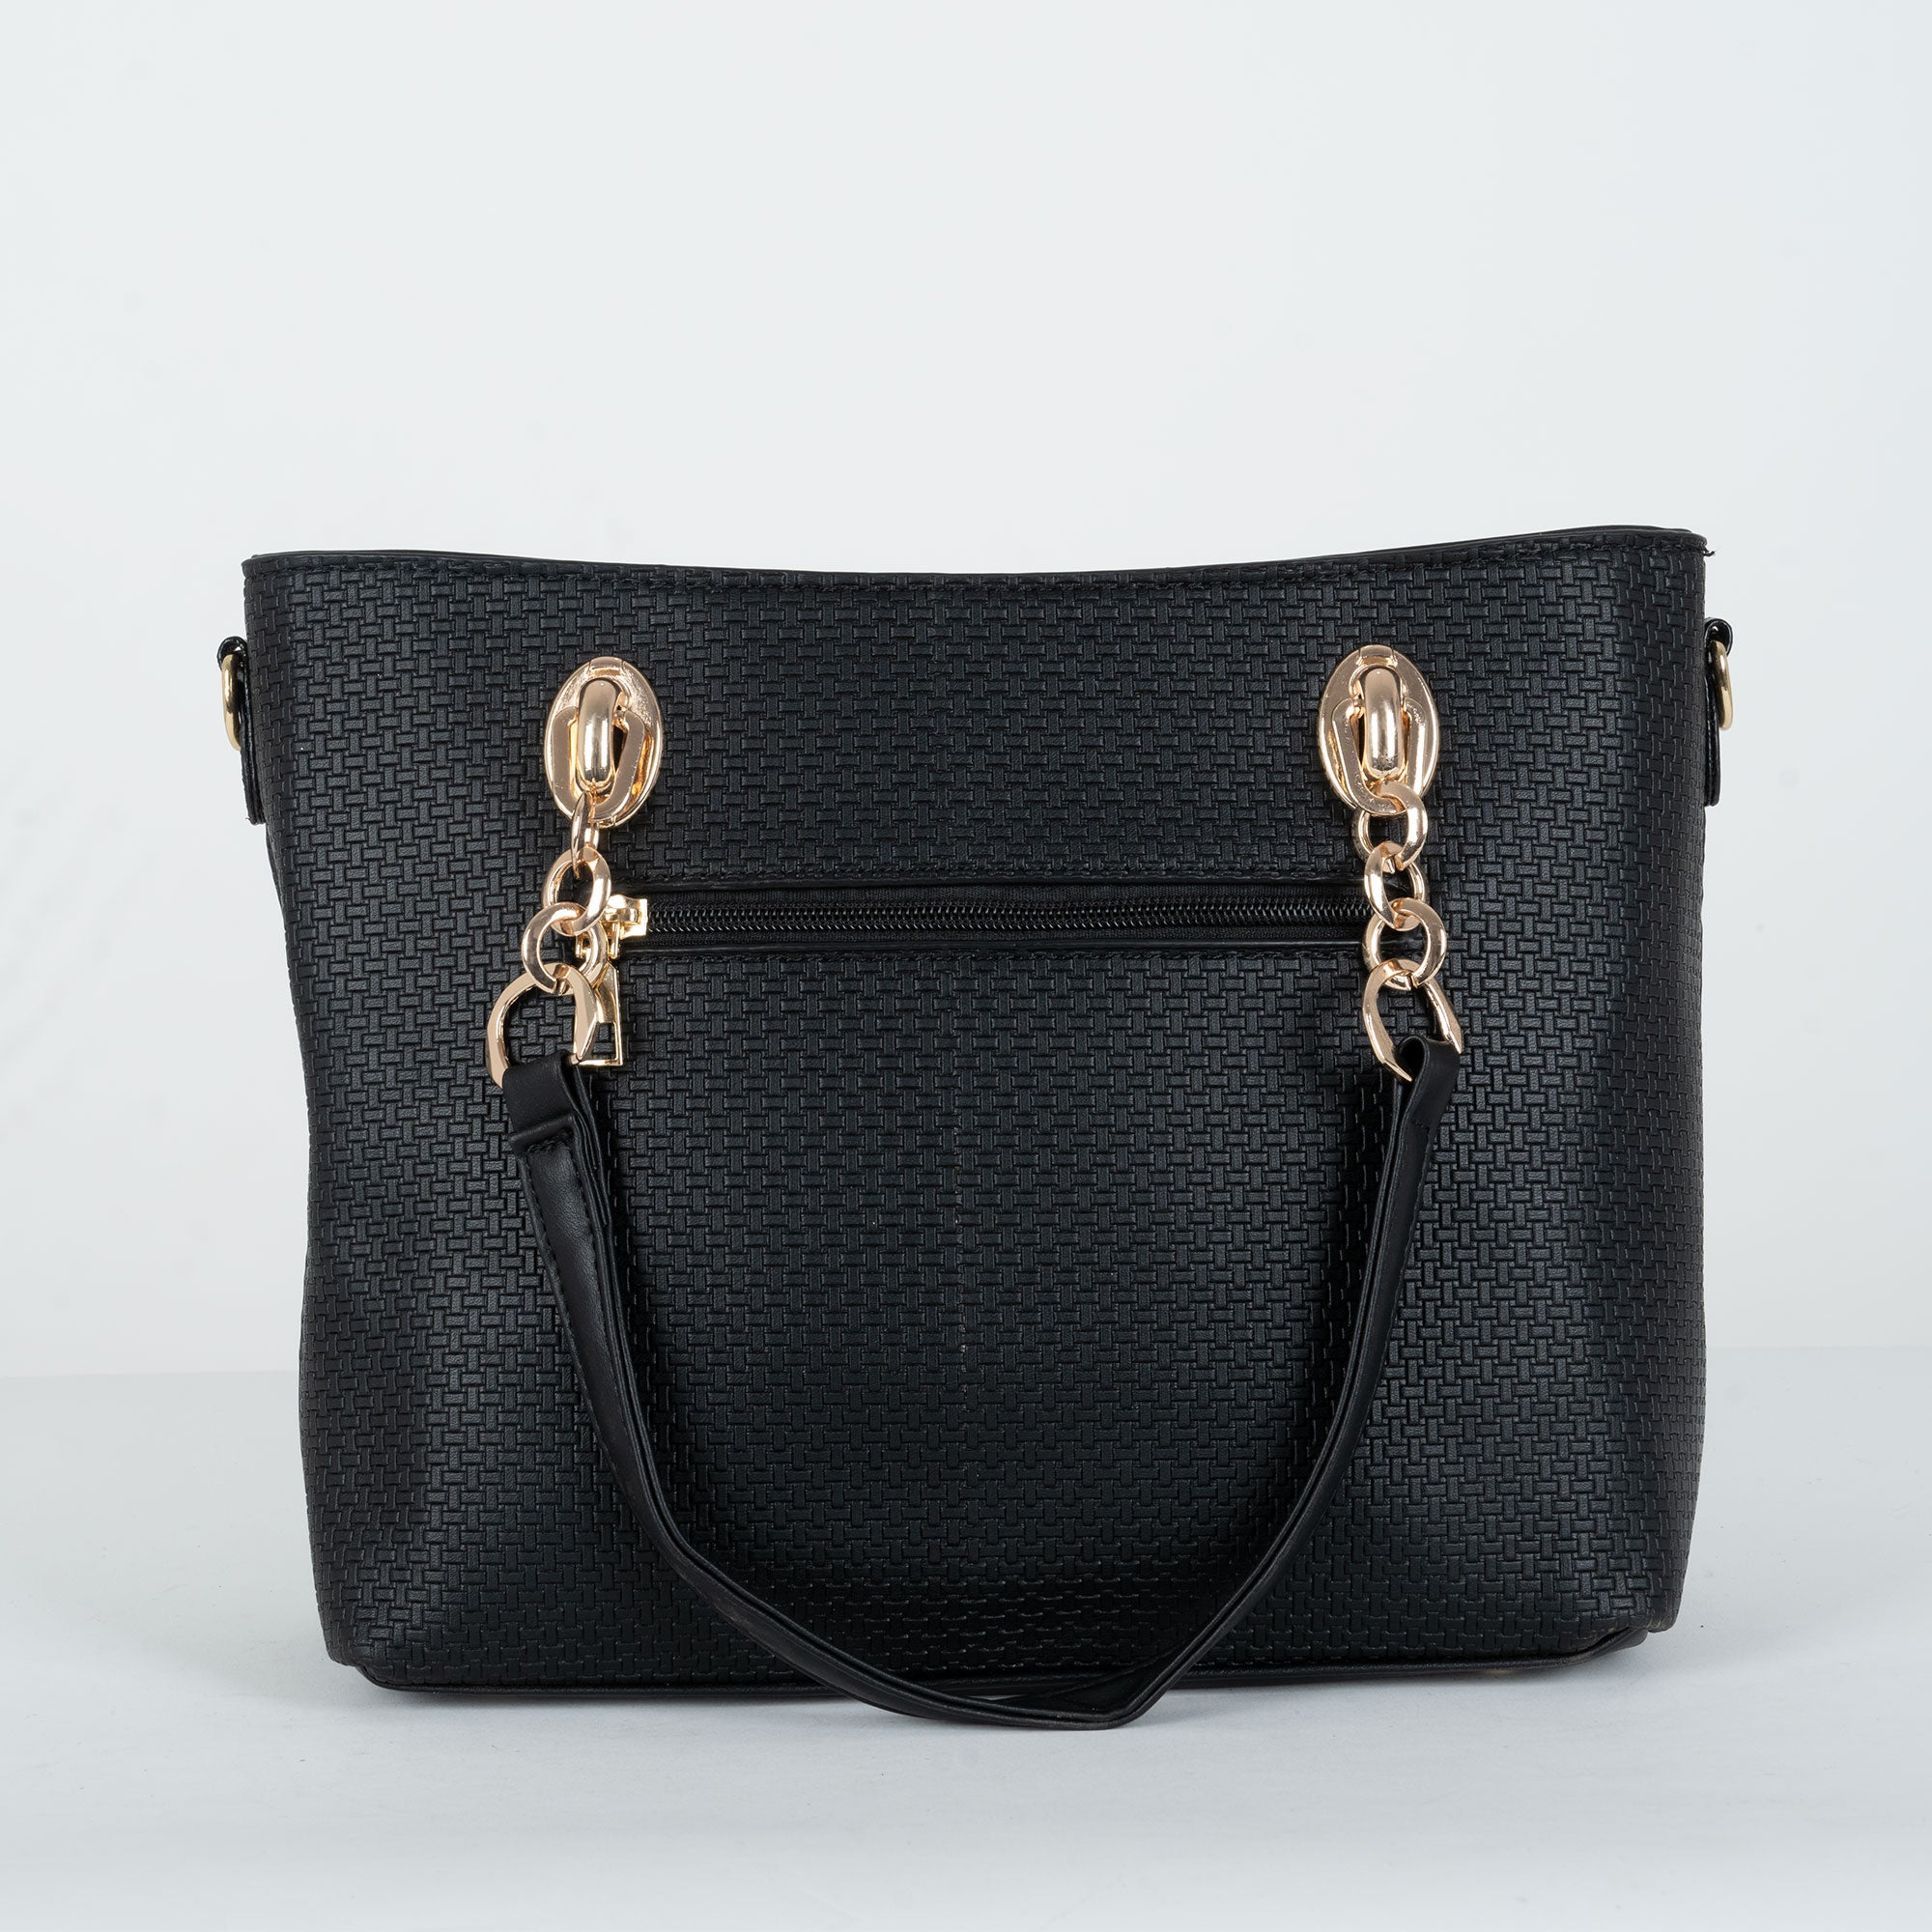 Stylish Women Handbag